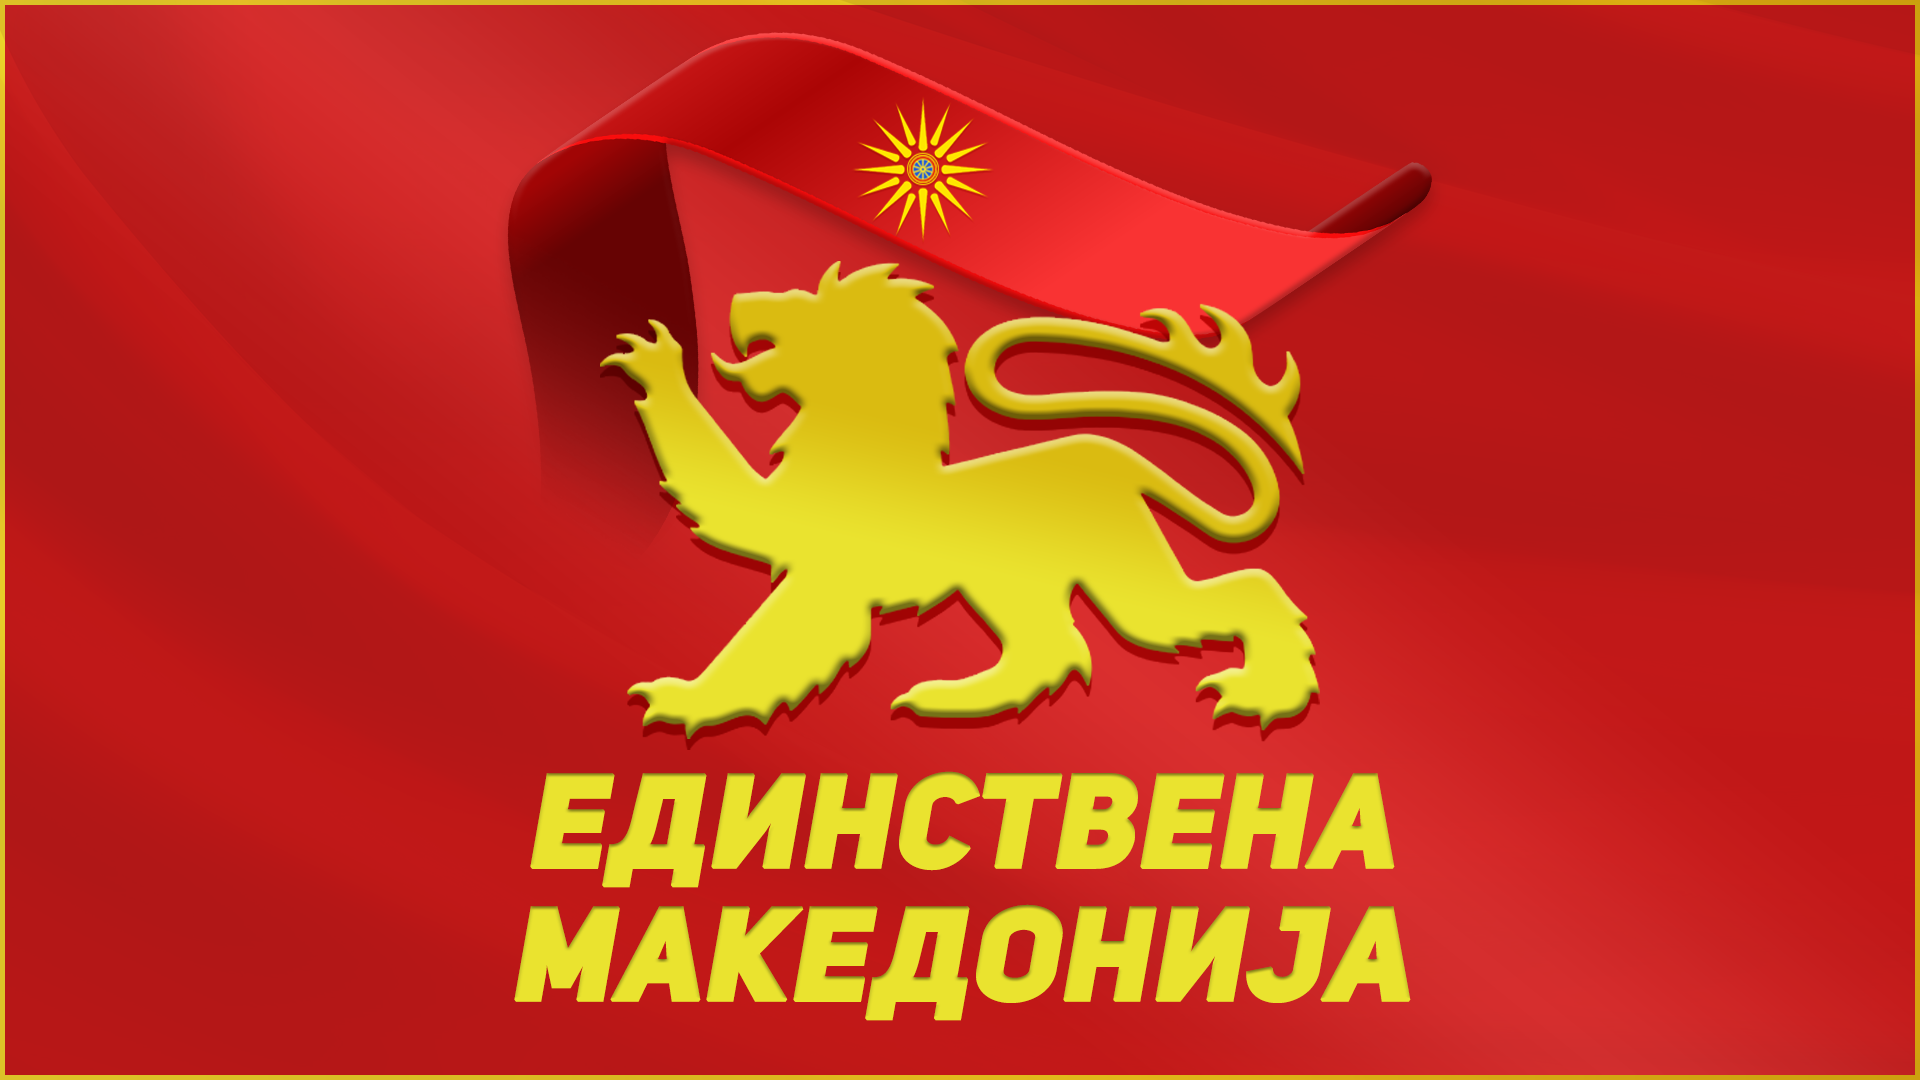 Единствена Македонија: По 30 години се враќаме на изворното место, на 2 Август организираме прослава на АСНОМ во Прохор Пчињски 